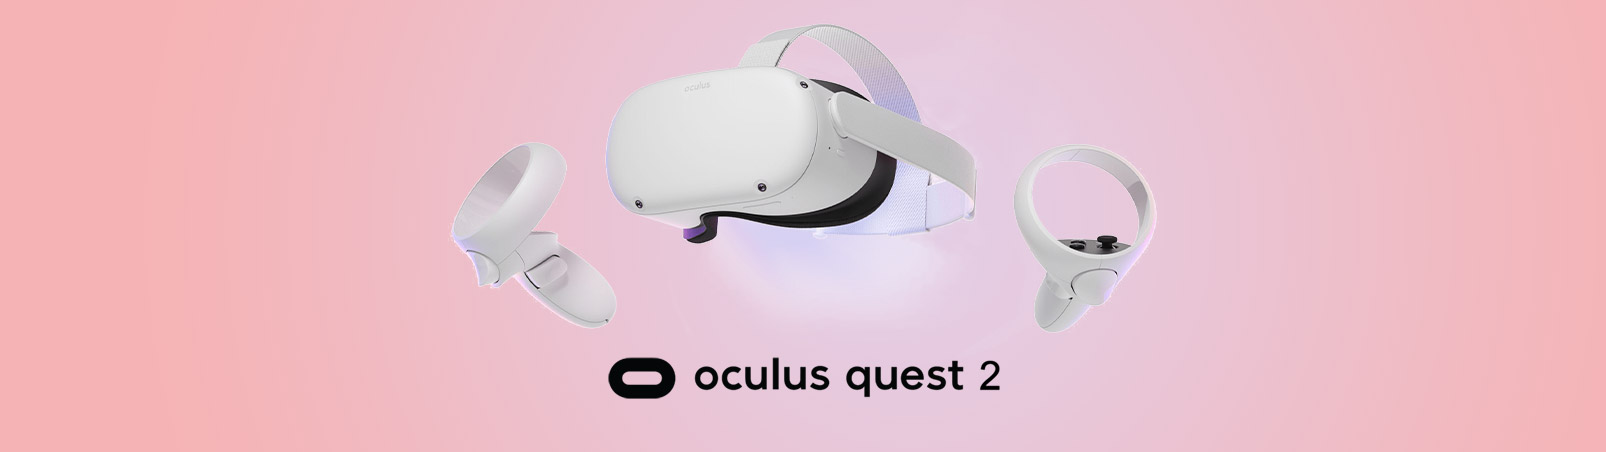 هدست واقعیت مجازی oculus quest 2